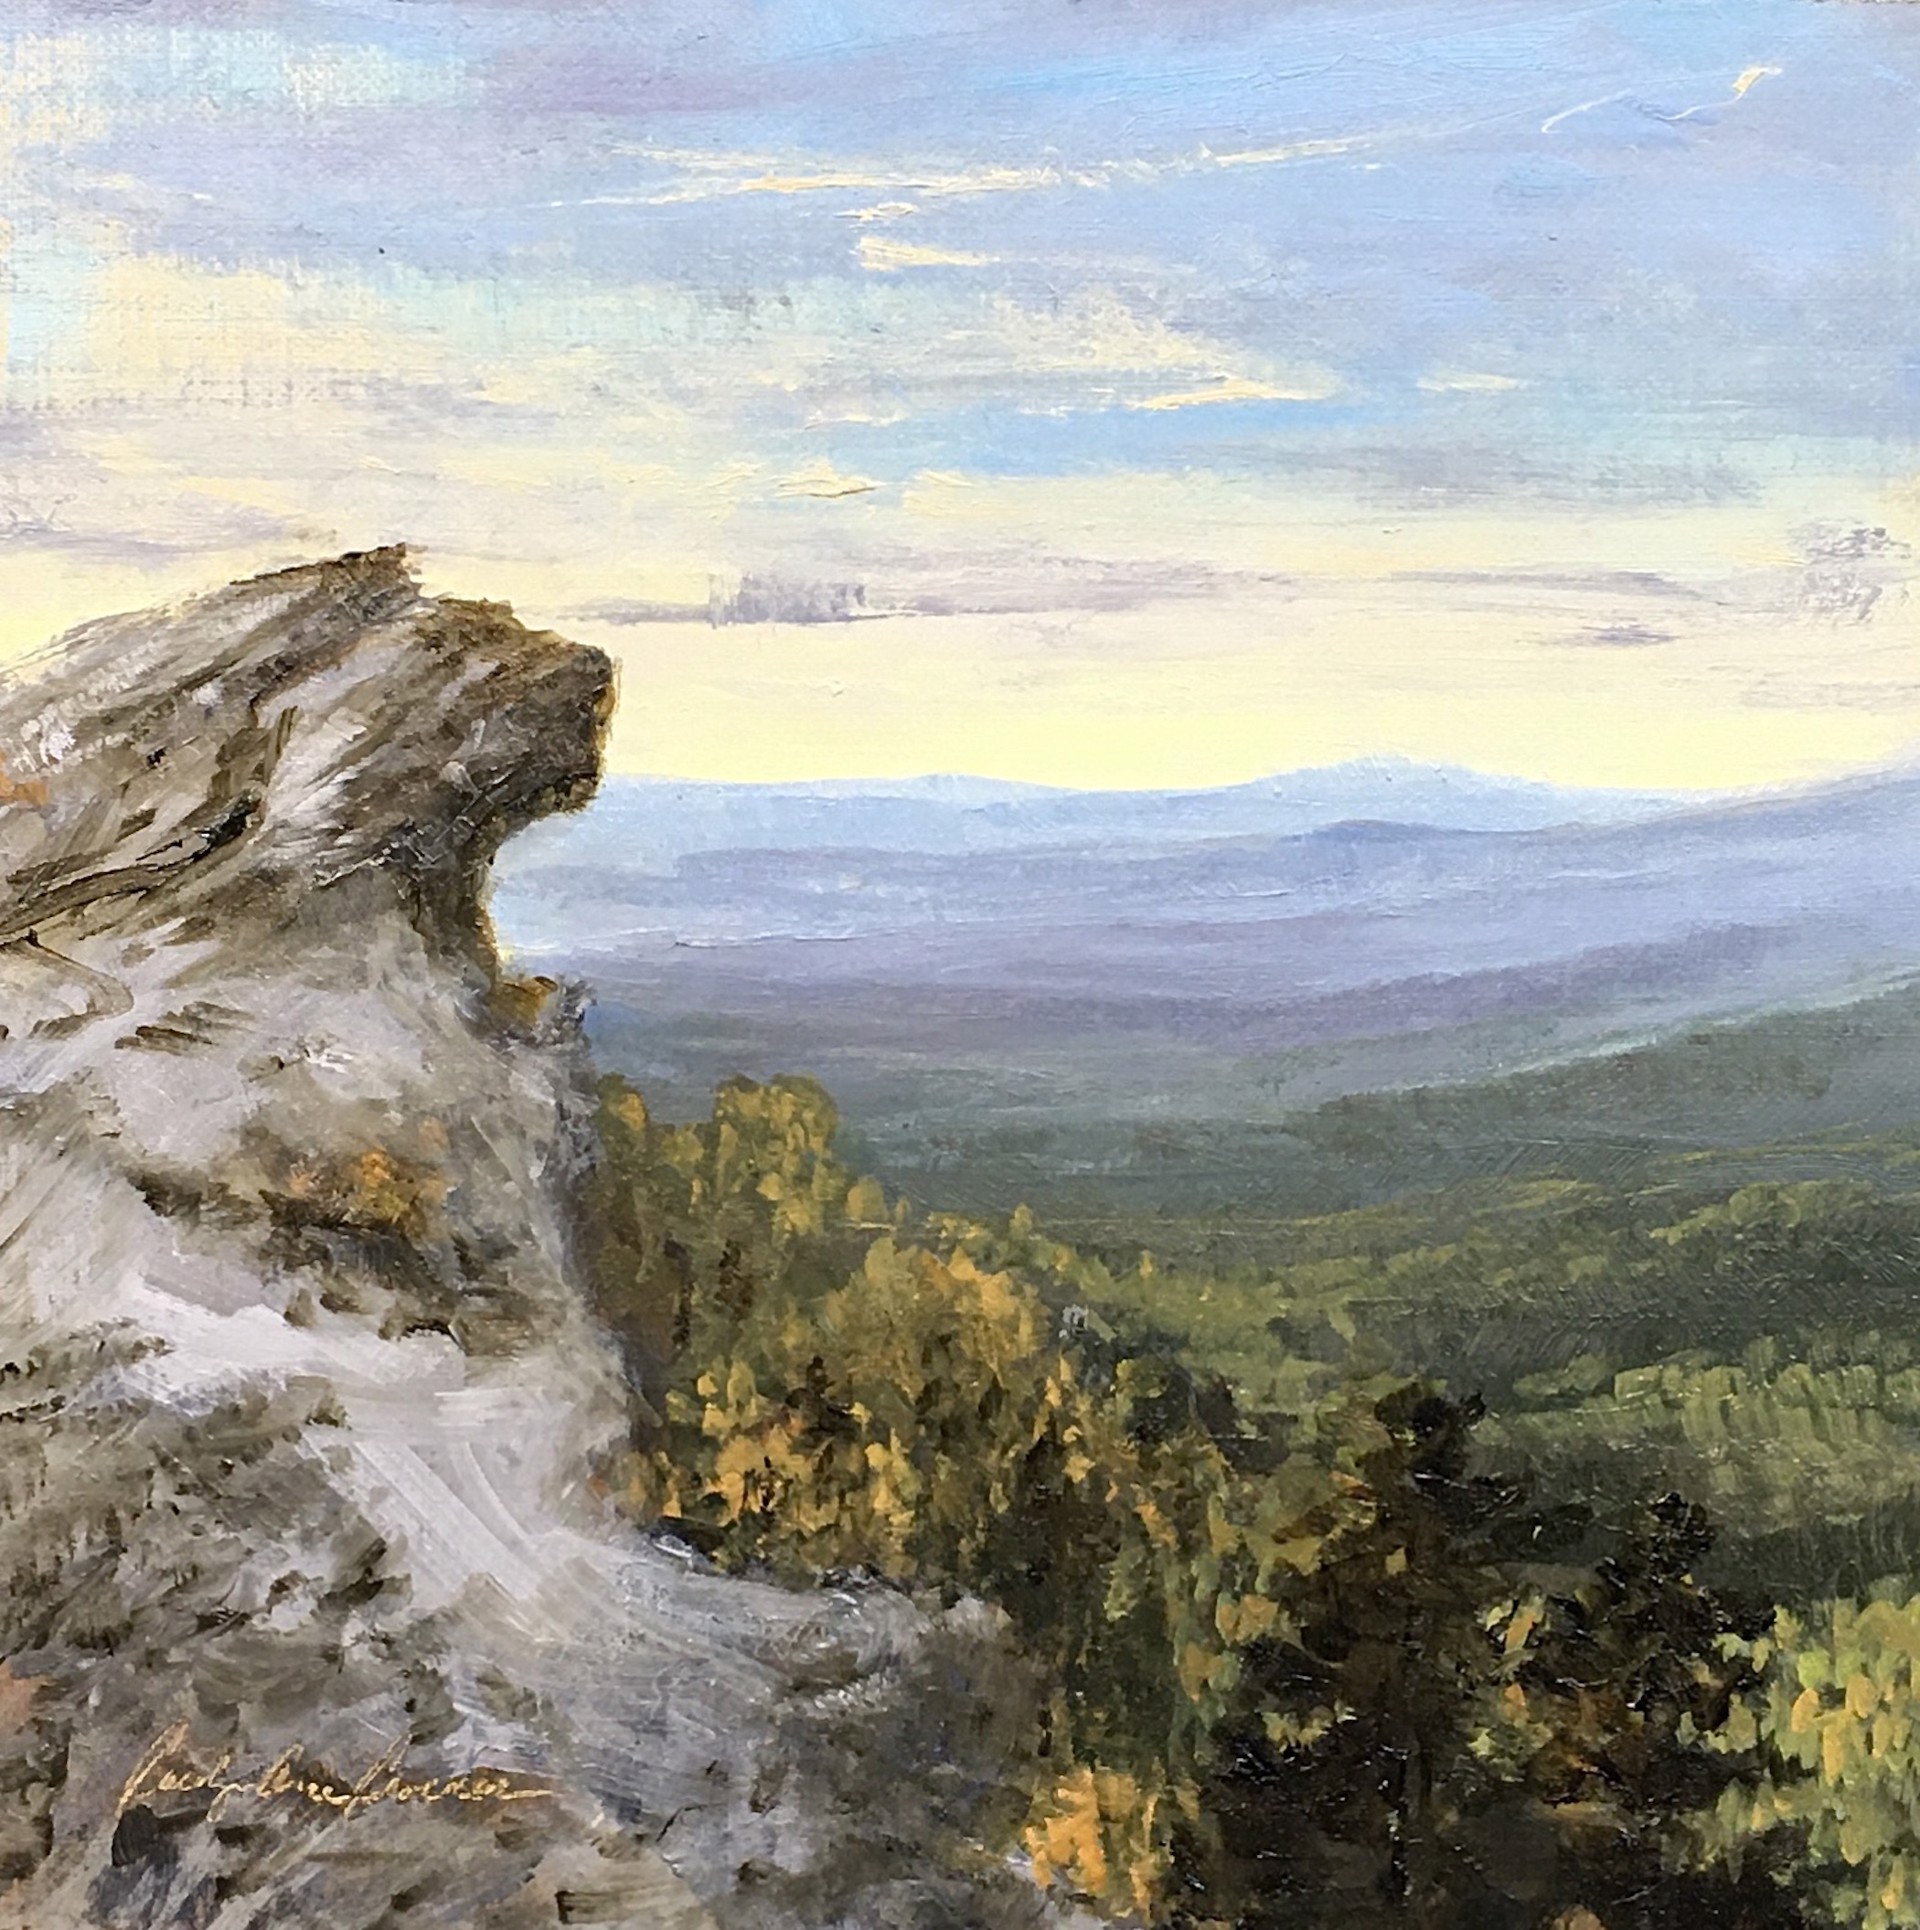 Blowing Rock View by Carolyn Crocker-Rue